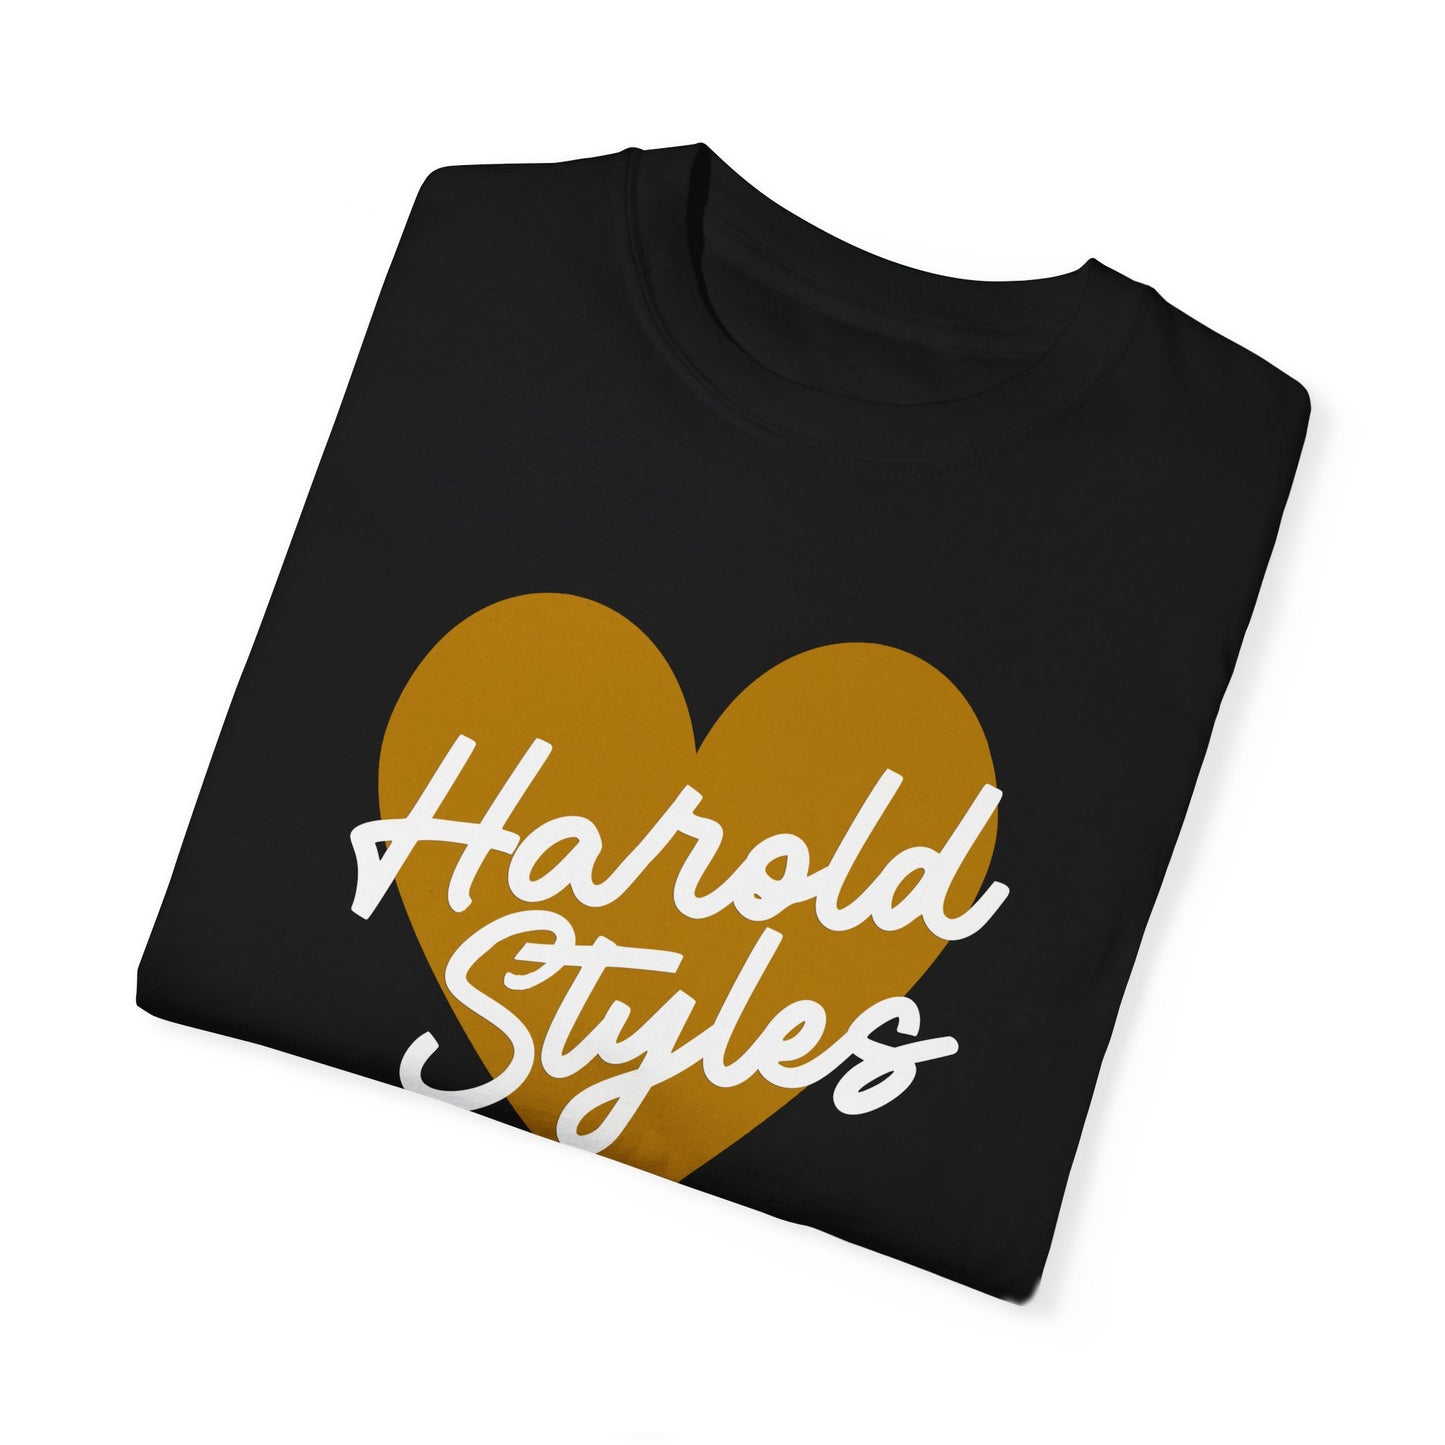 Harold Styles - Tee